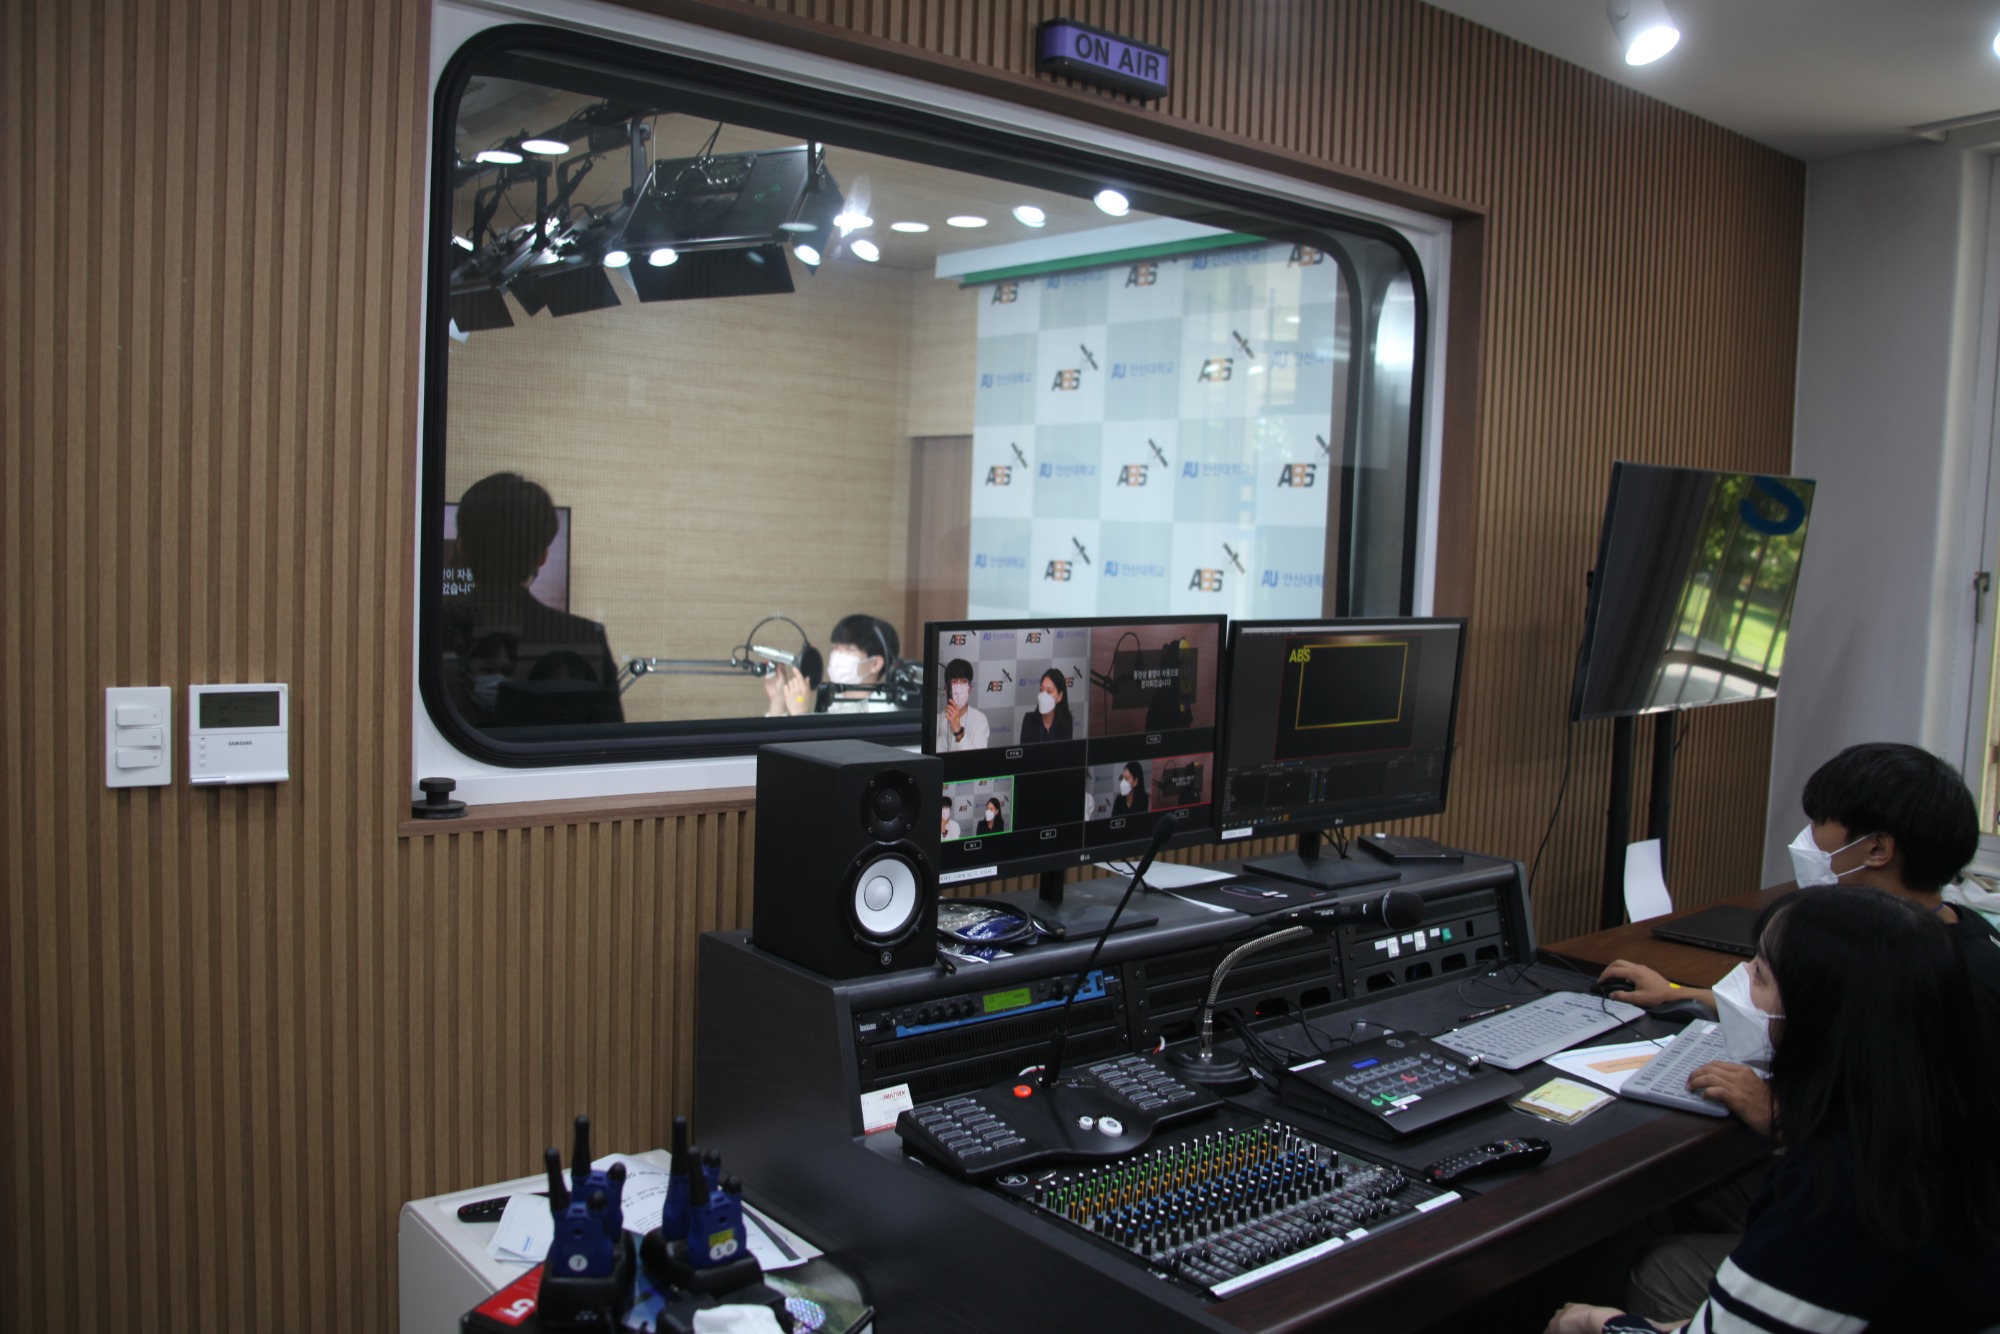 072_211005_안산대학교, ABS studio 개소식 개최사진1.JPG